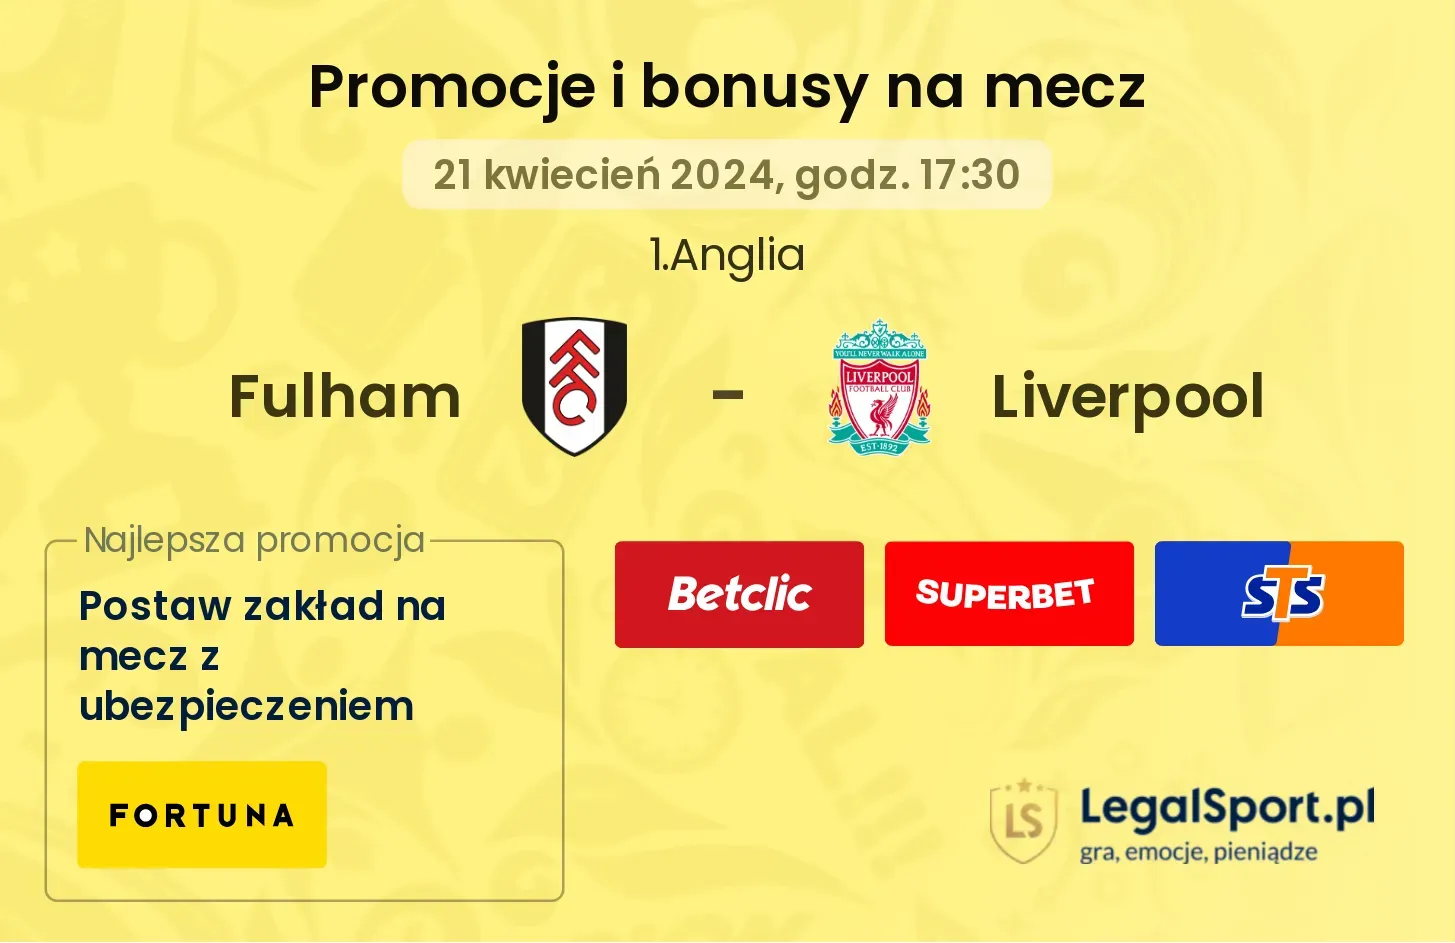 Fulham - Liverpool bonusy i promocje (21.04, 17:30)